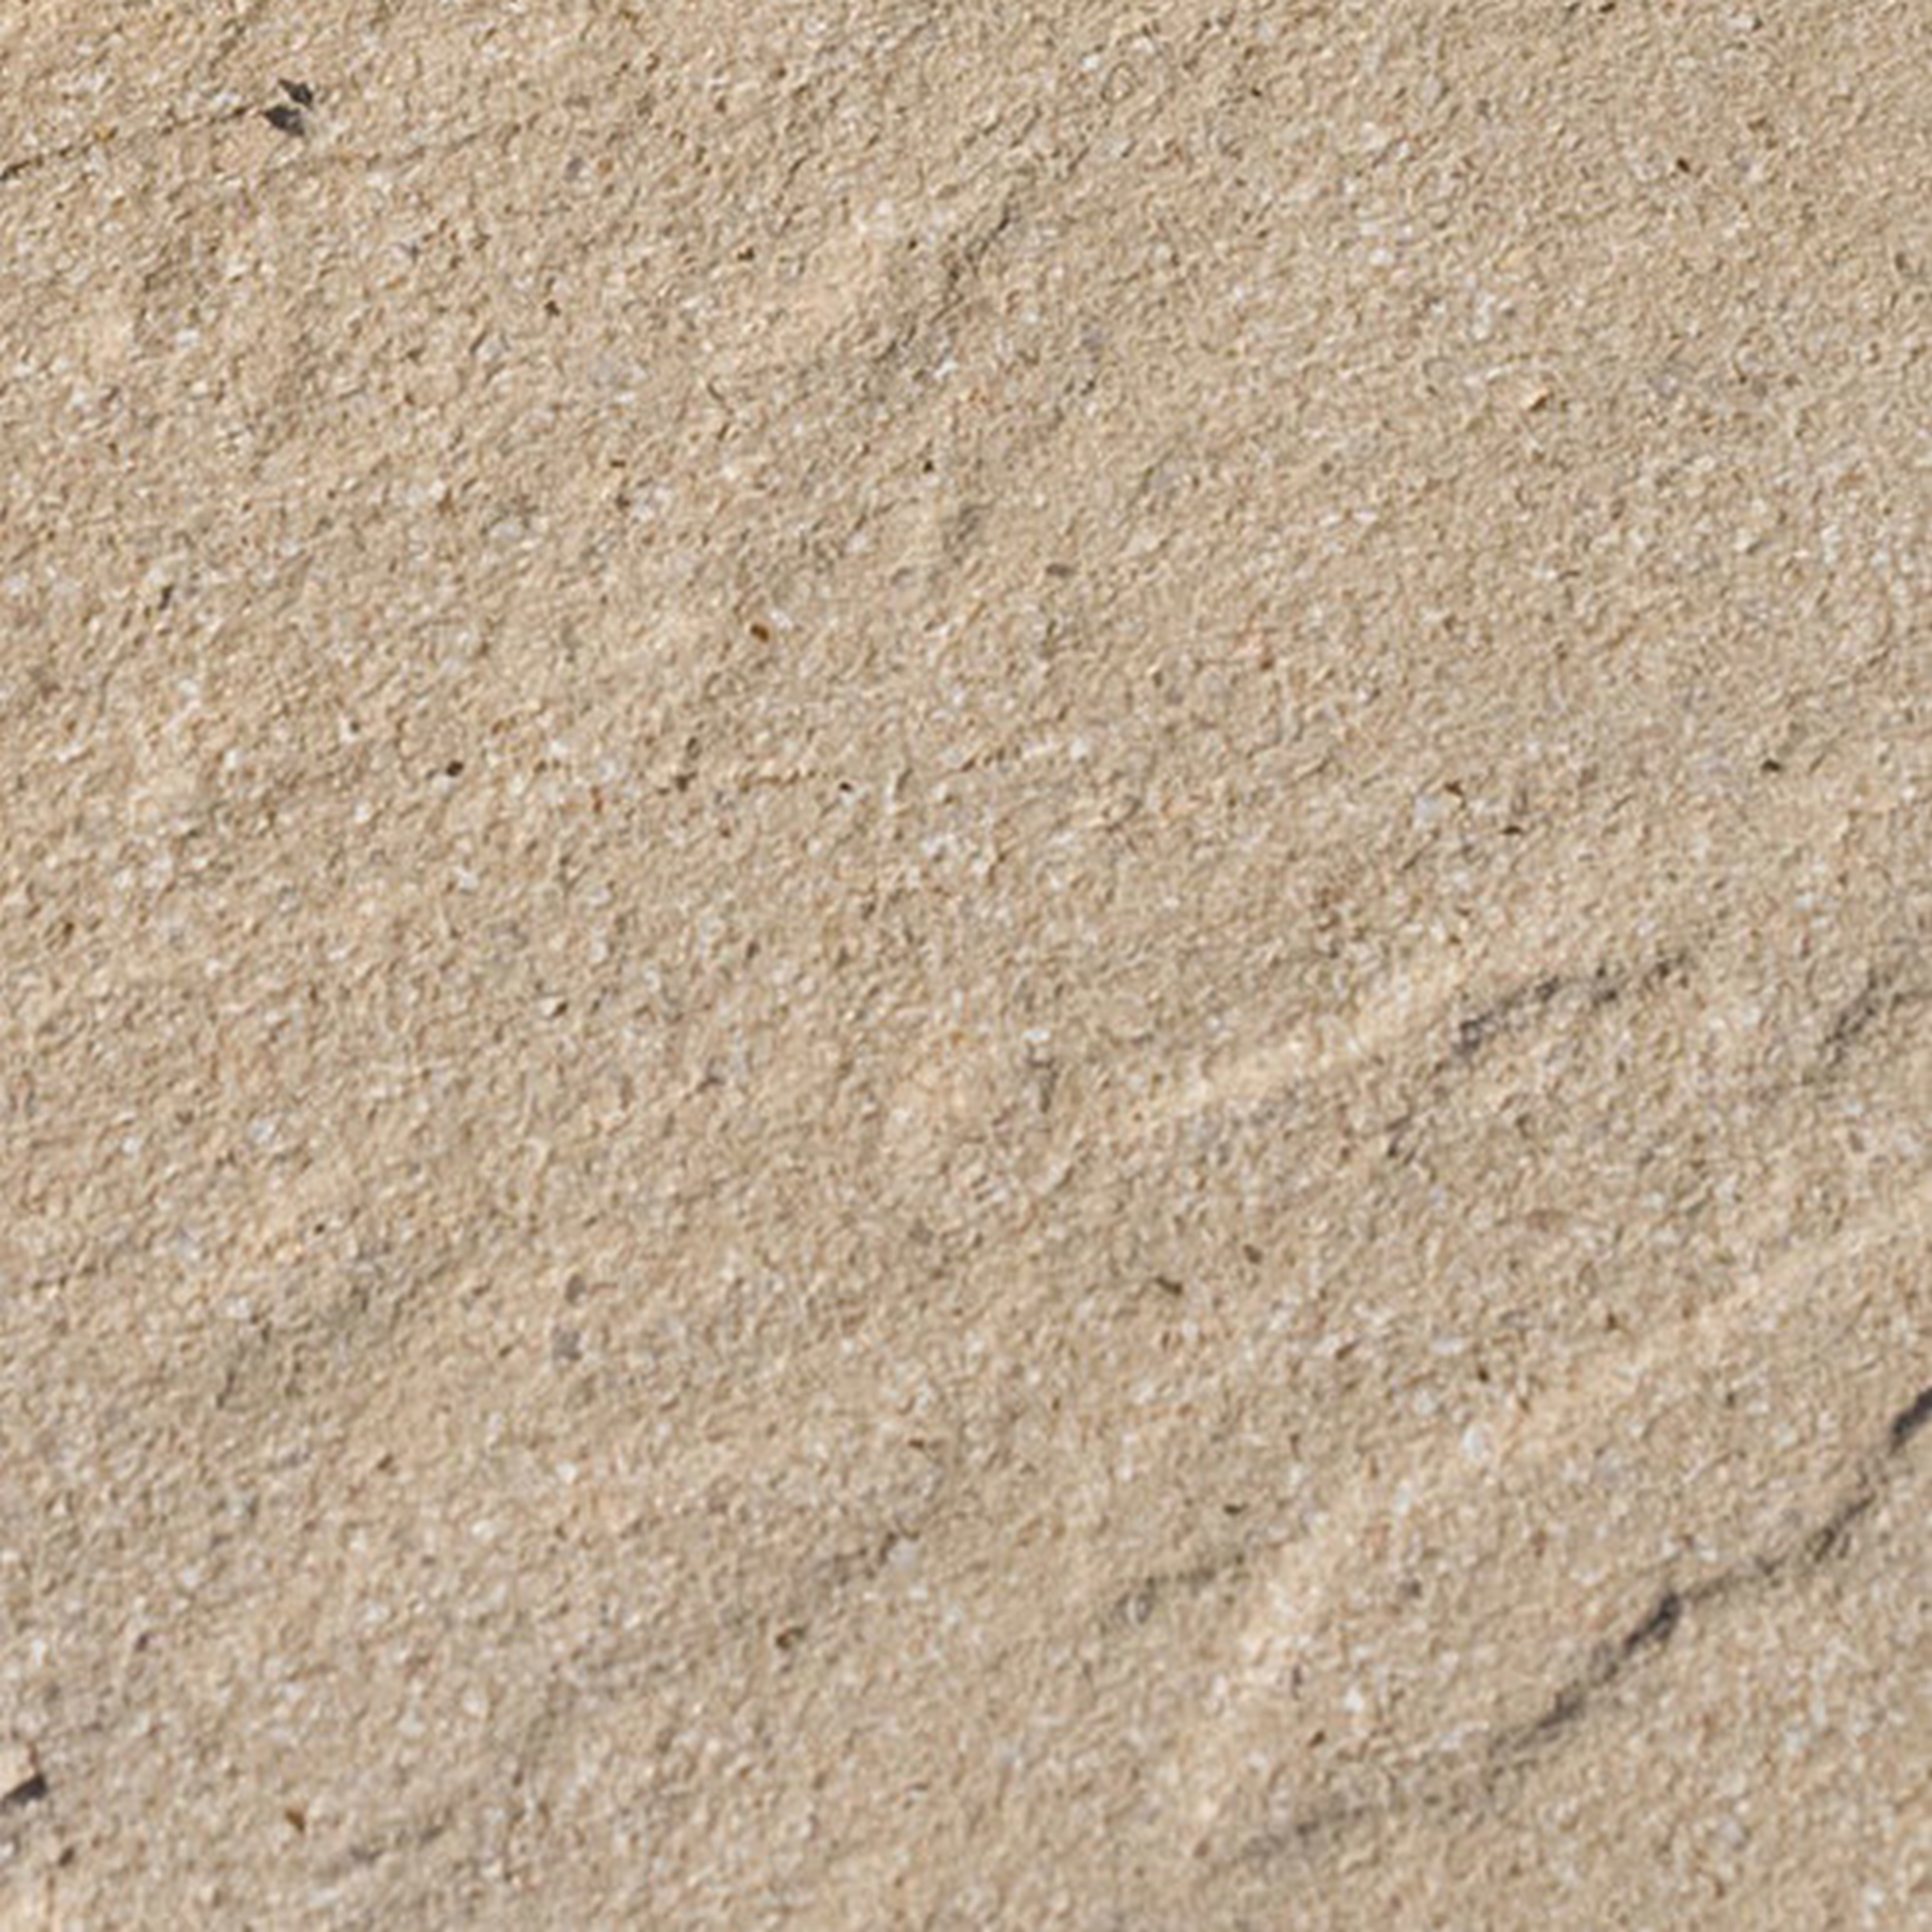 Platte 'Leverano' sandfarben 40 x 40 x 3,8 cm + product picture